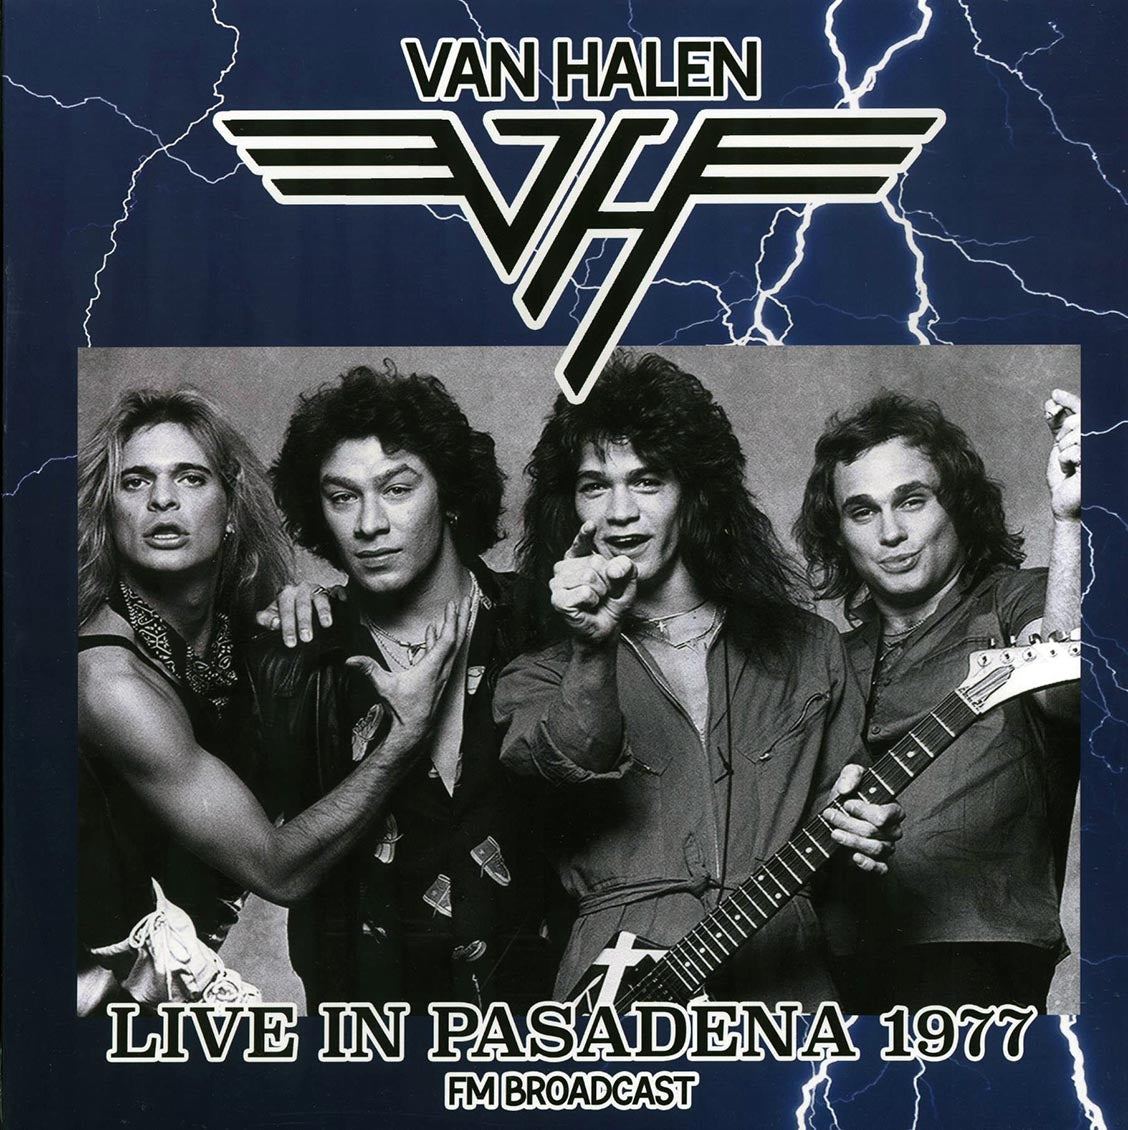 Van Halen - Live In Pasadena 1977 FM Broadcast (ltd. 500 copies made) - Vinyl LP